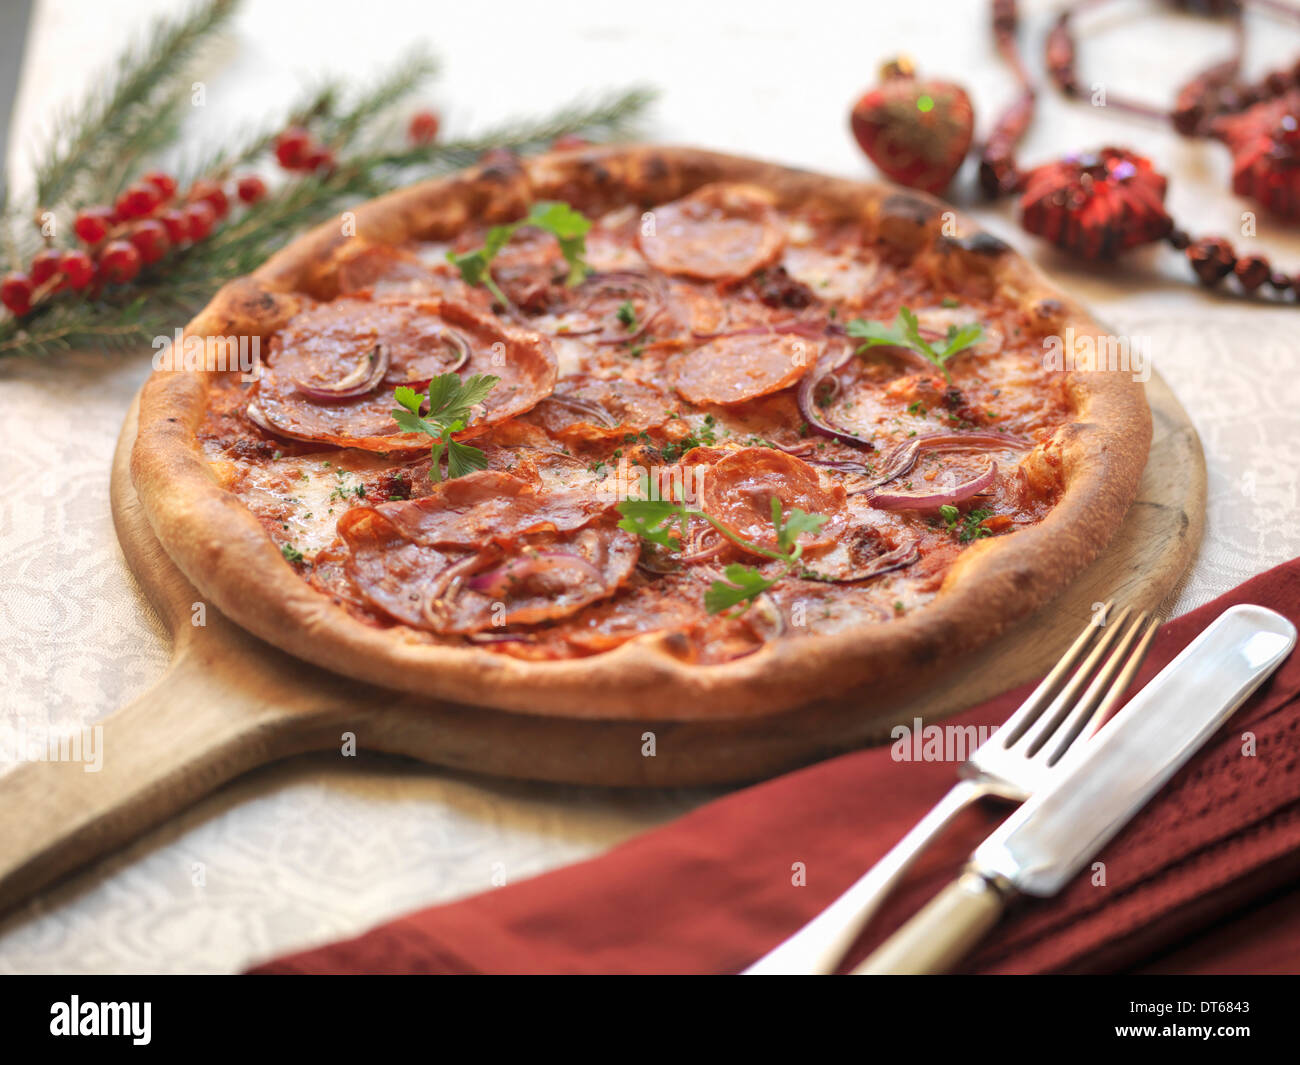 Pizza casera con salami picante, caliente calabresa chorizo, cebolla roja y queso mozarella con decoraciones festivas Foto de stock